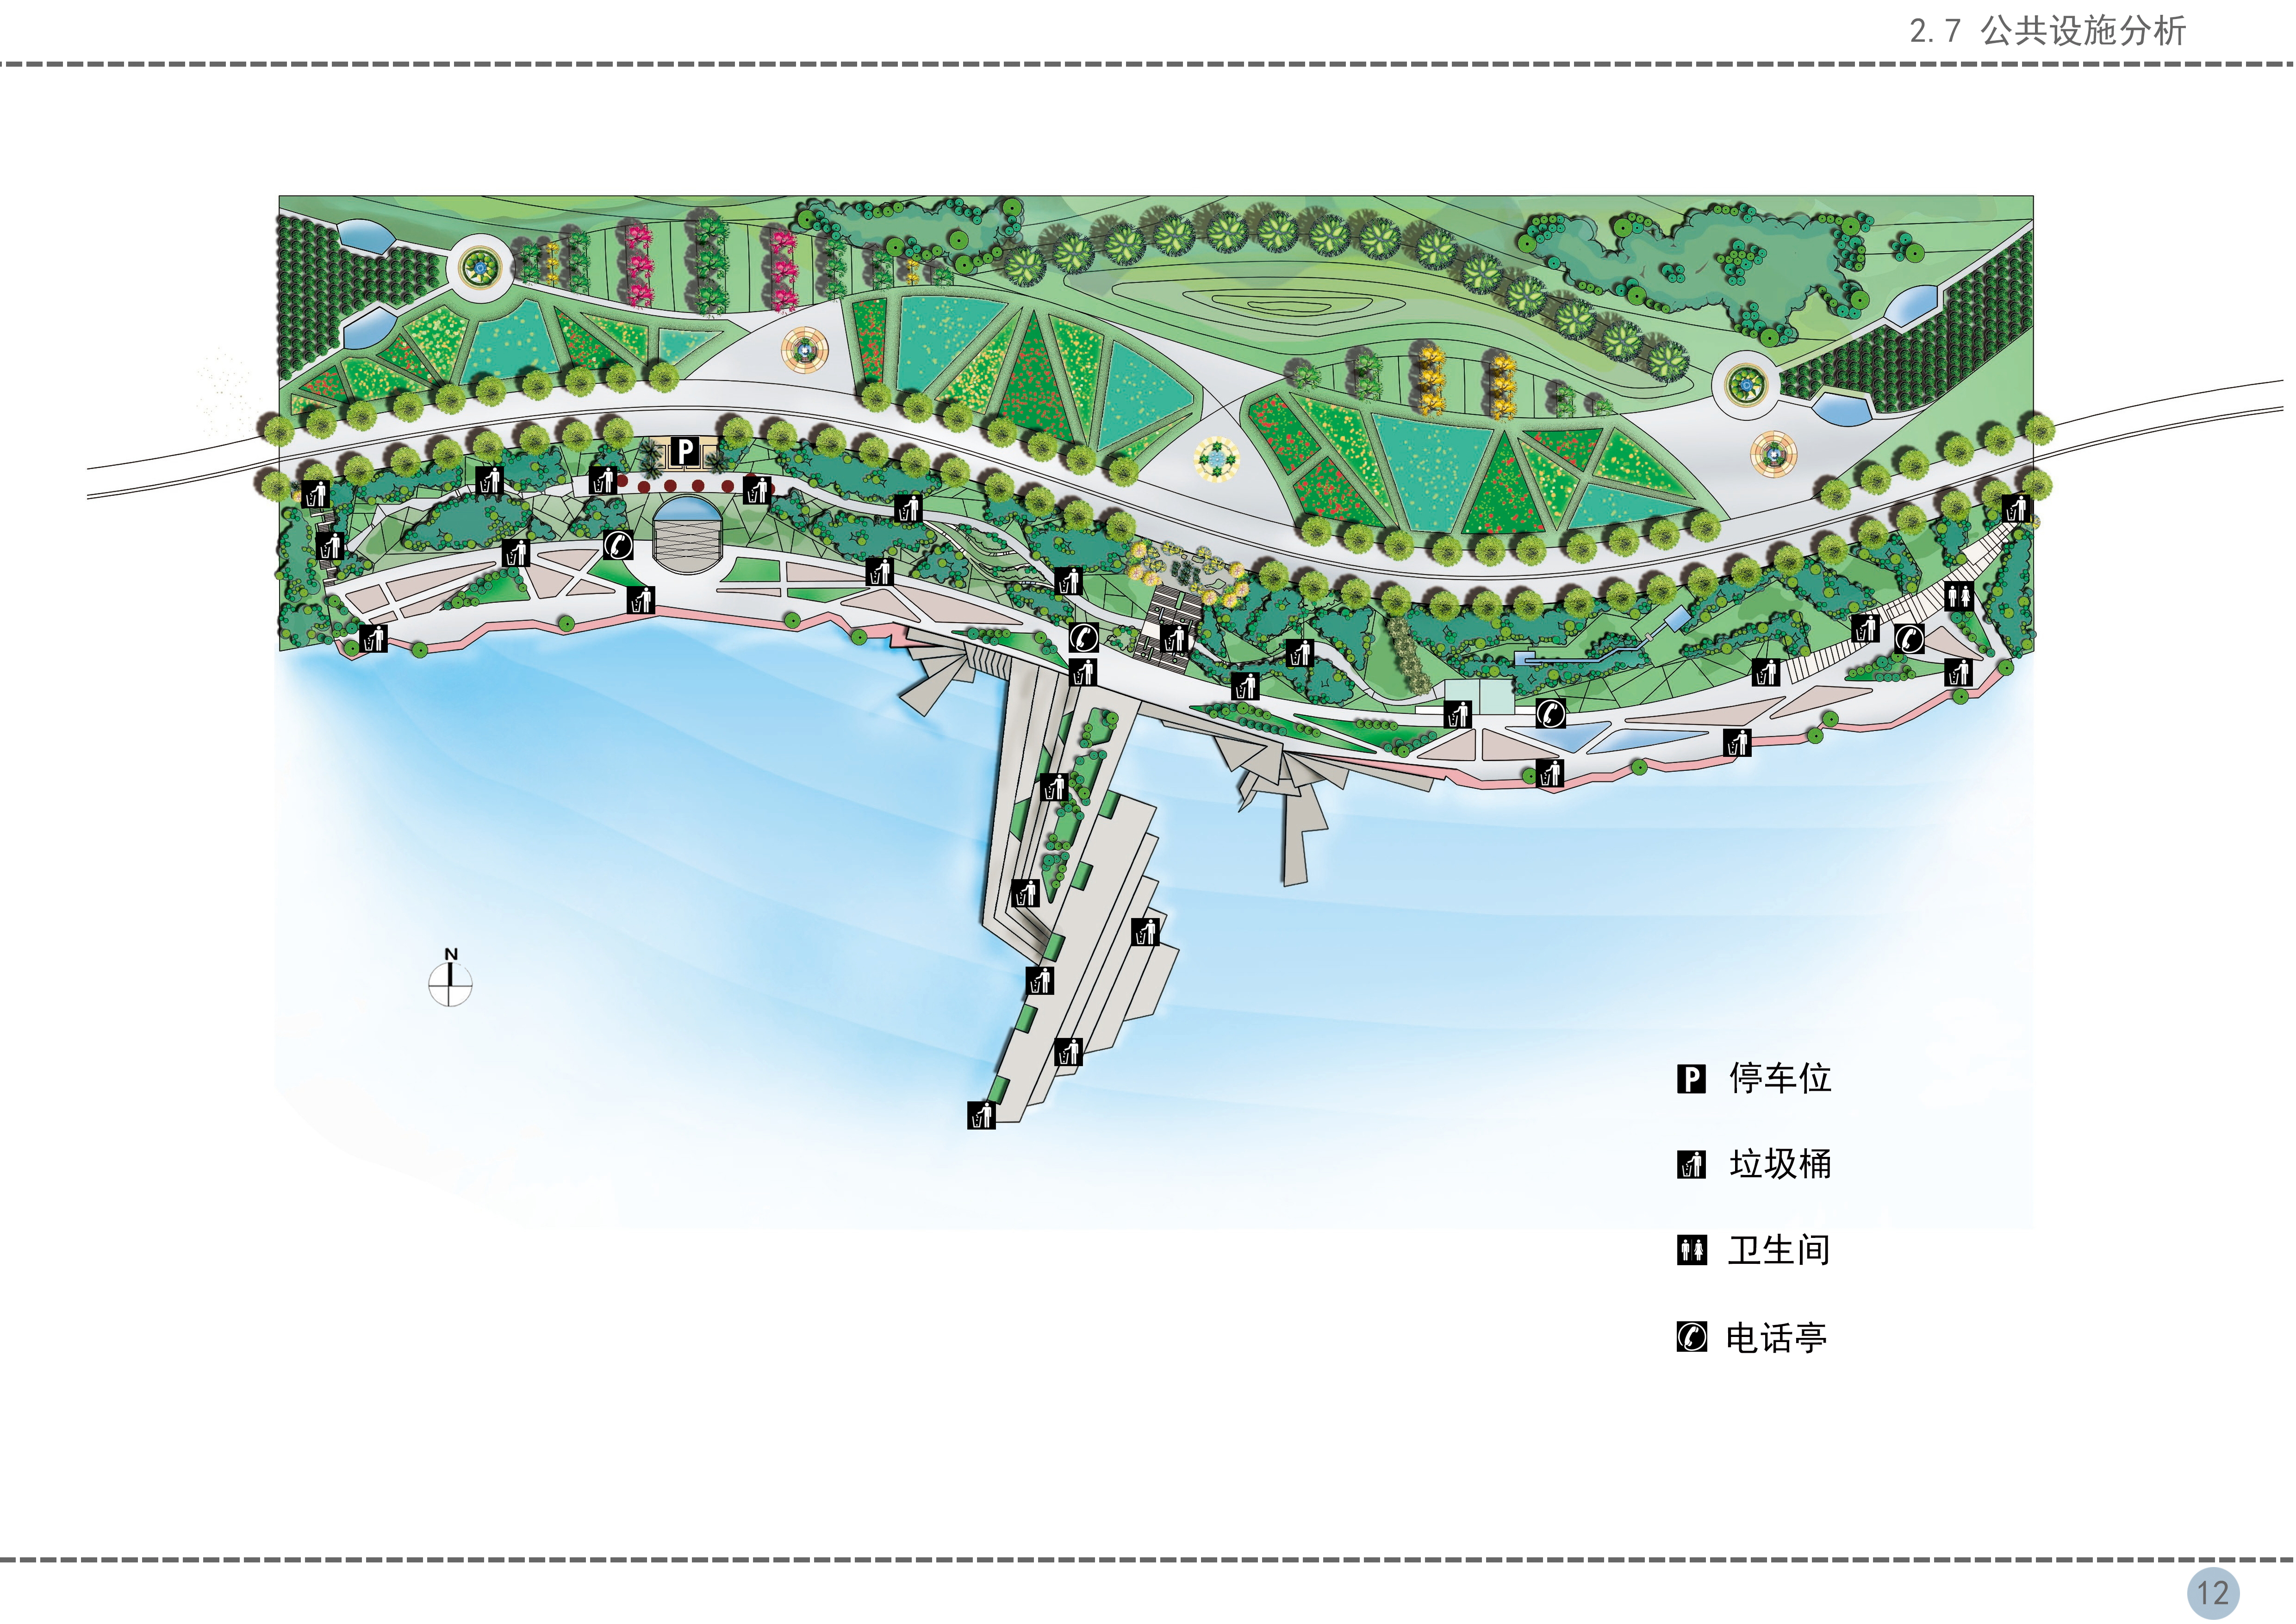 西安灞河滨水景观设计同时作为西安世博园的附属景观